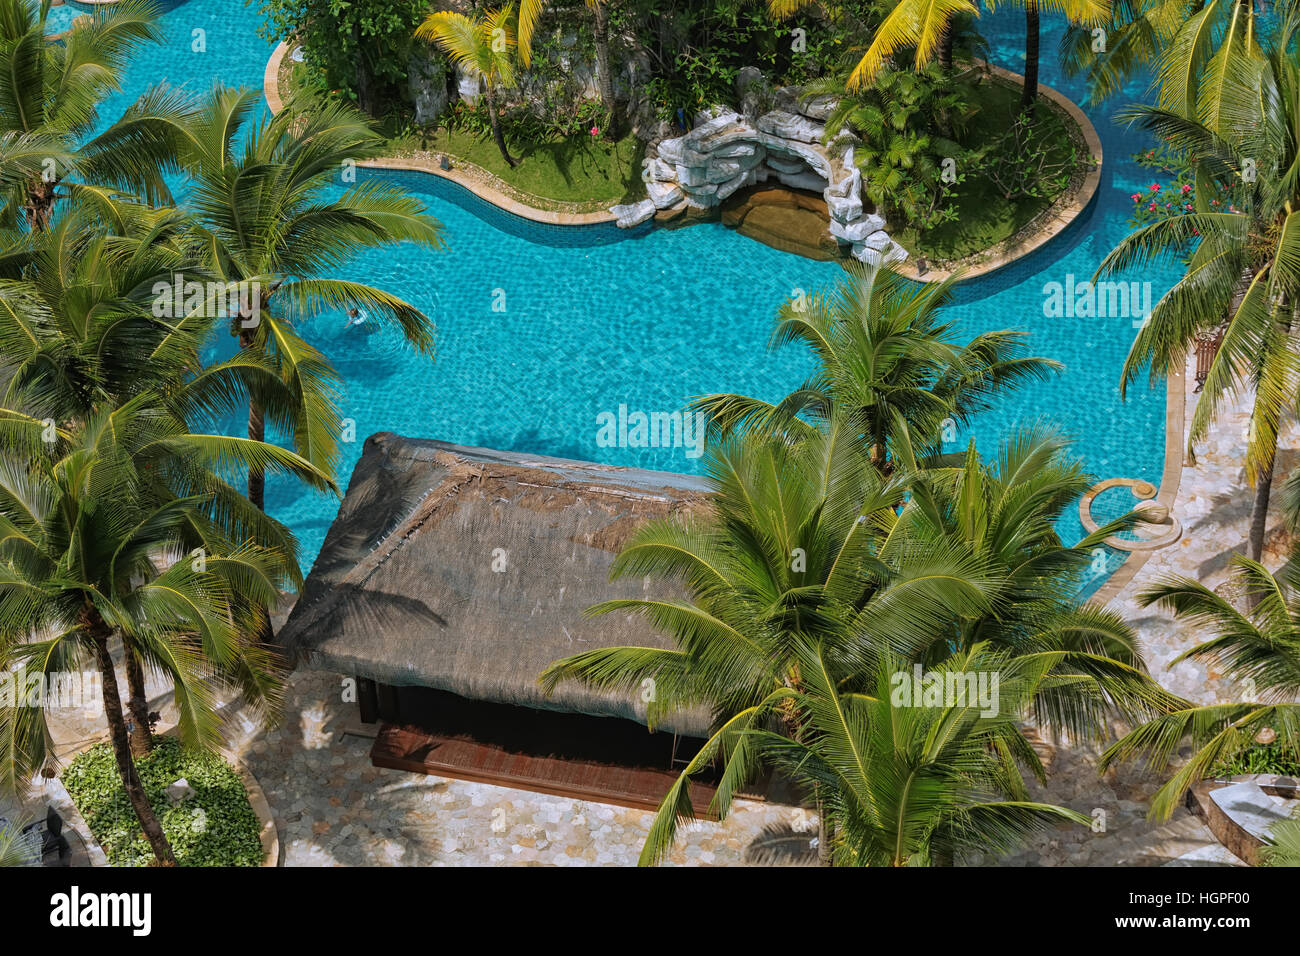 Luftbild Hotel-Pools und Garten Stockfoto